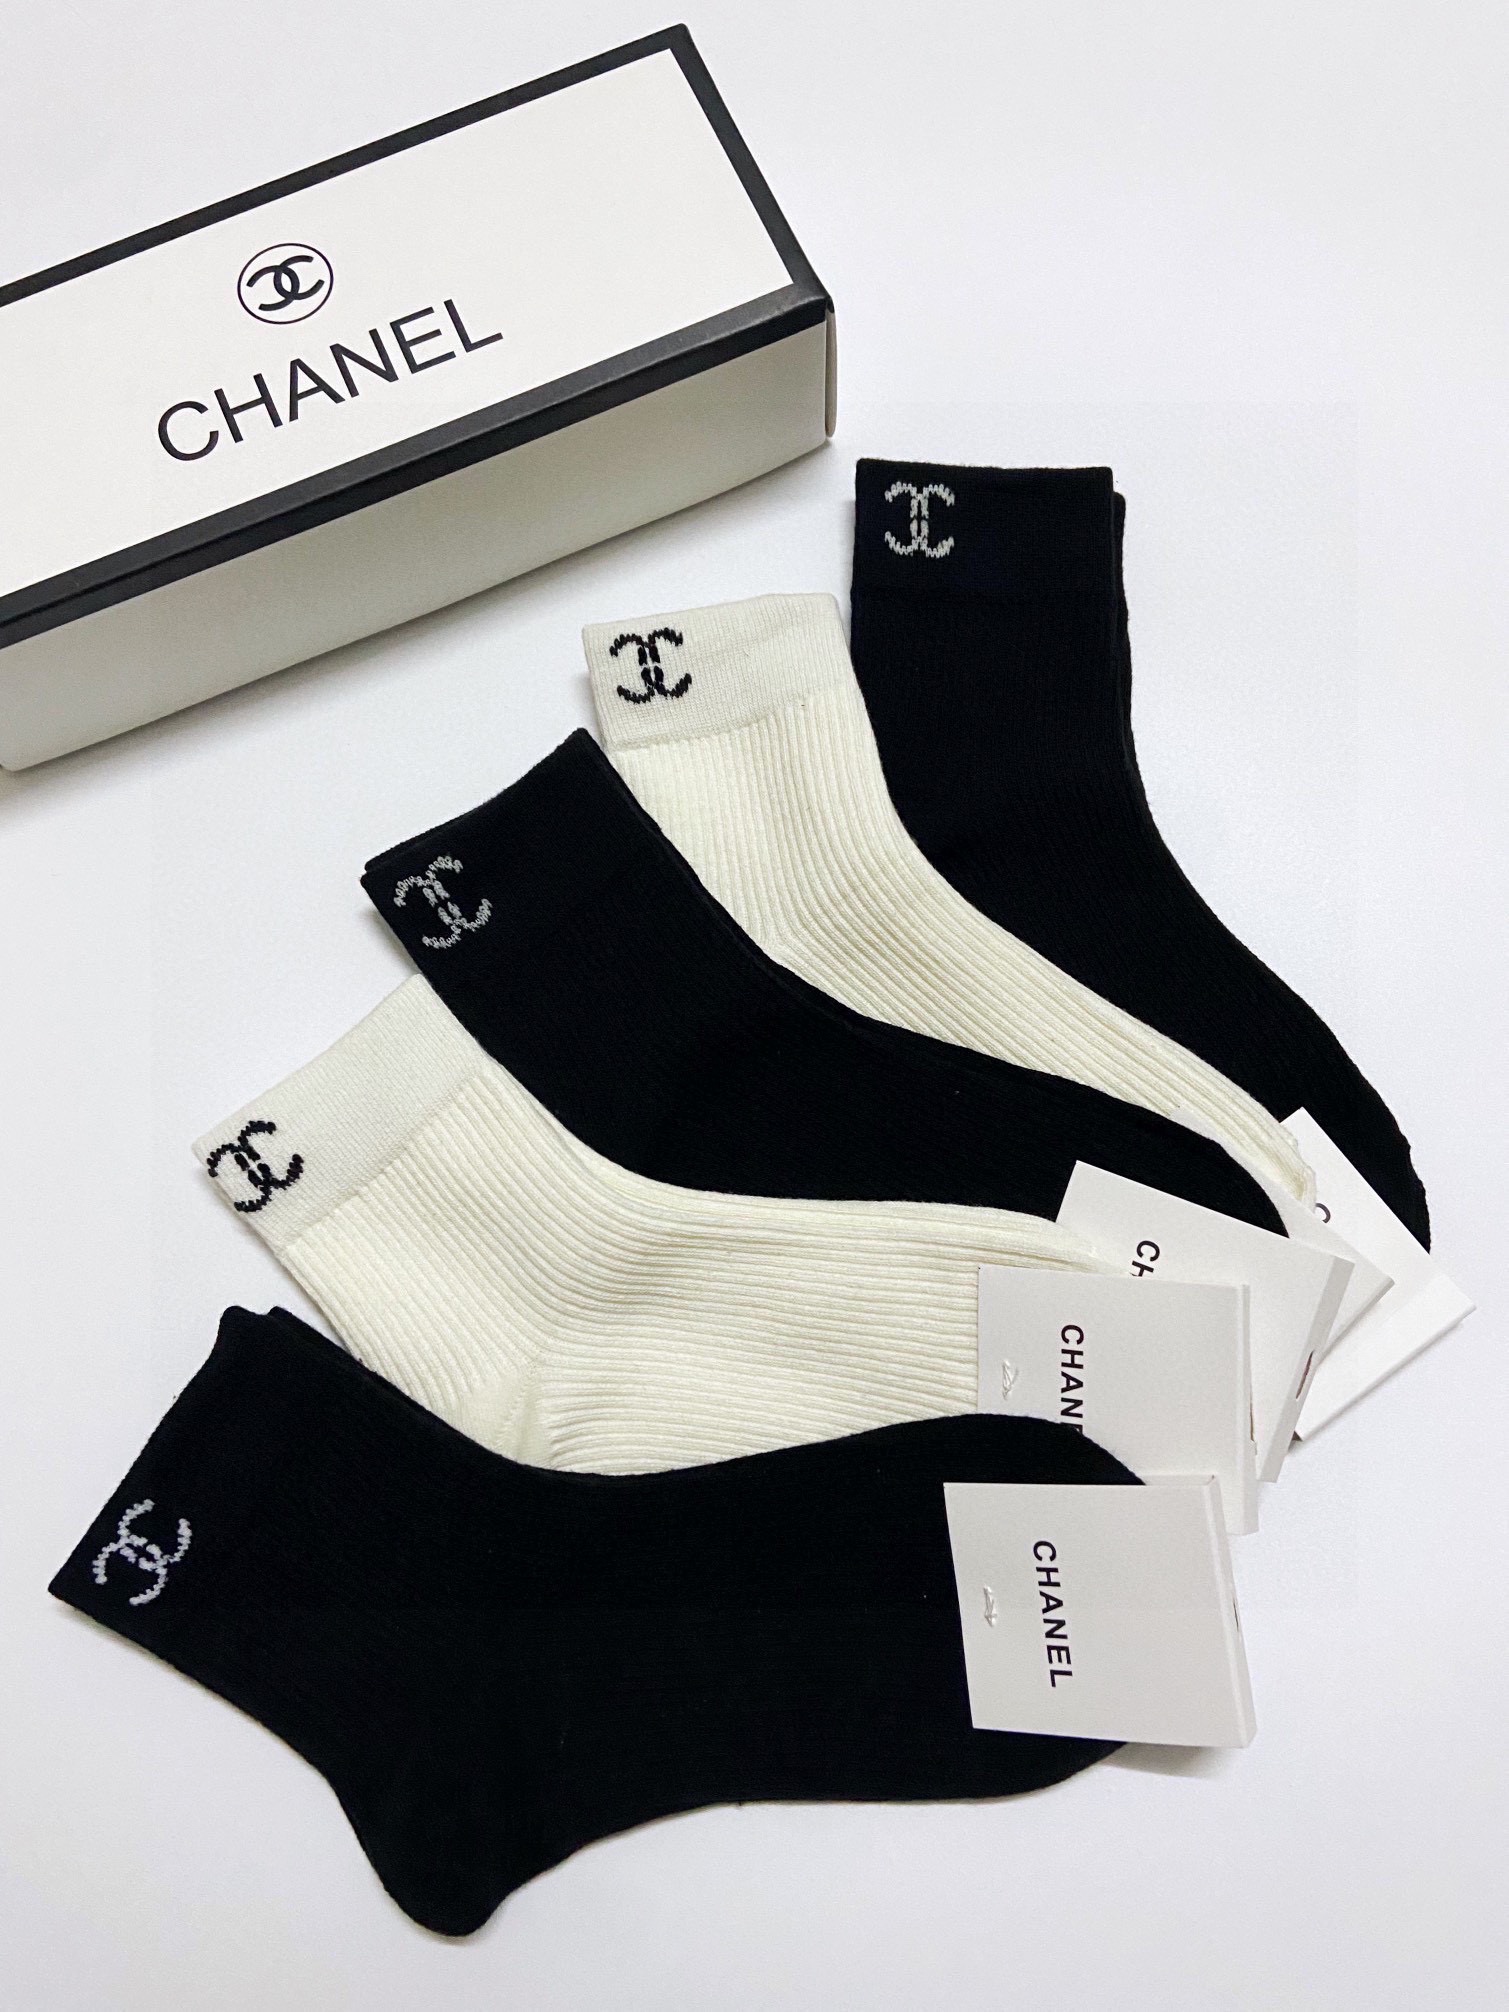 配包装一盒5双Chanel香奈儿精梳棉中筒袜短筒袜ins爆款！专柜在售ing好看到爆炸！酷妹潮人必不能少